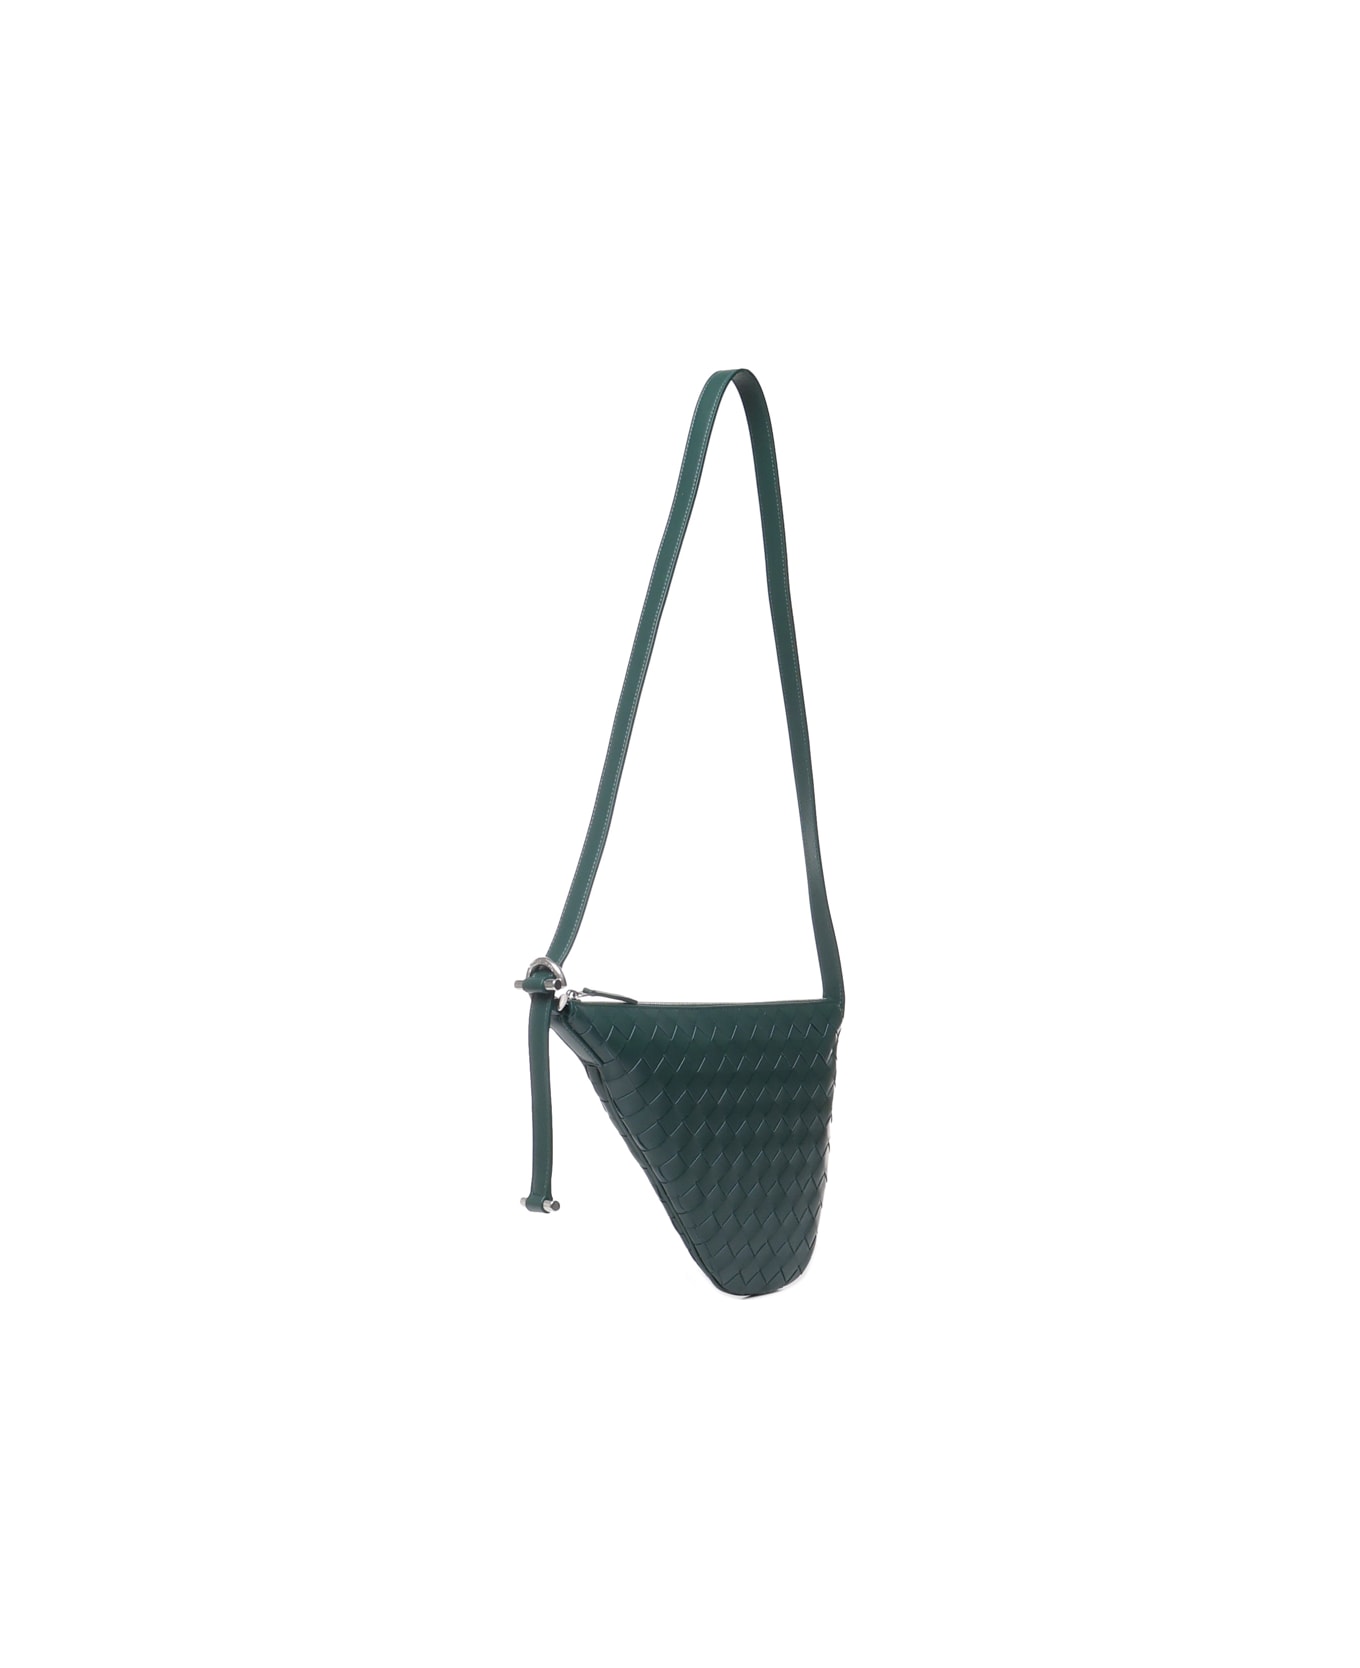 Bottega Veneta Small Virgule Bag In Calfskin - Emerald green-silver ショルダーバッグ